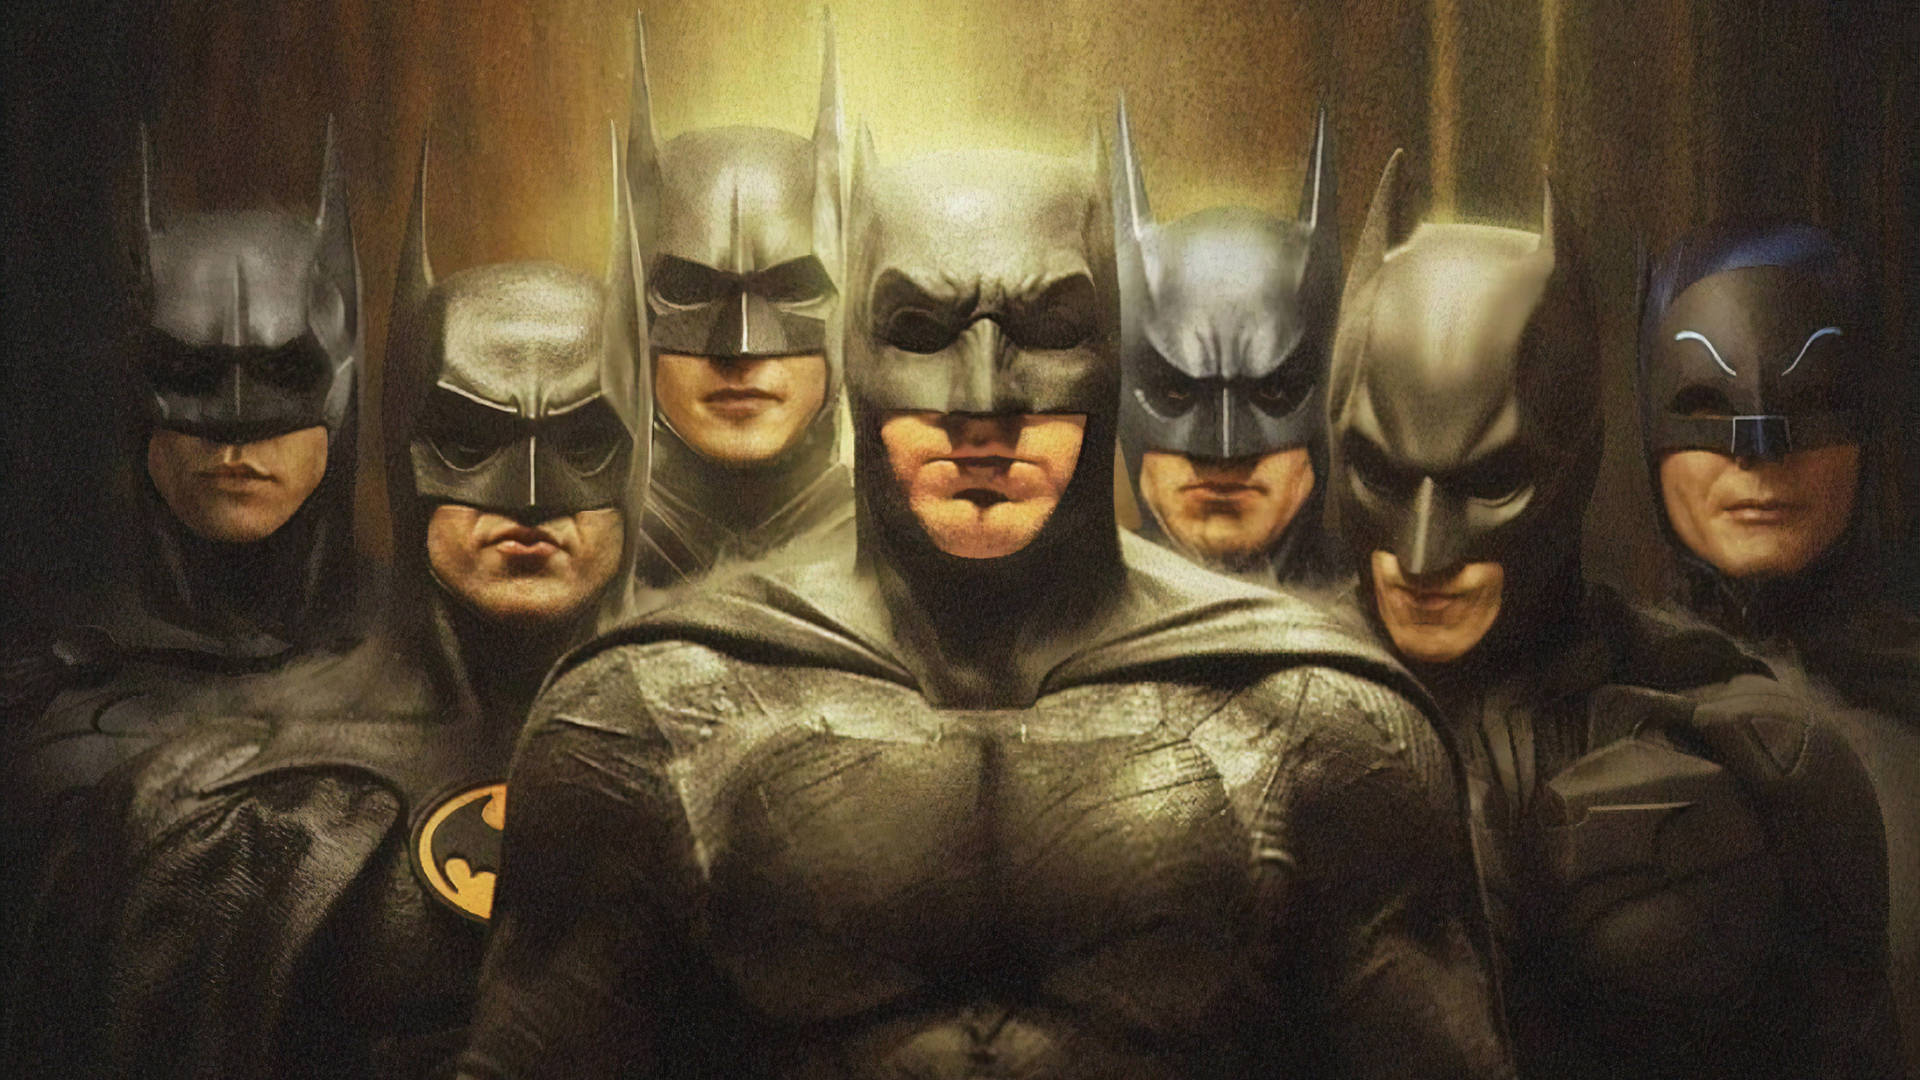 Versõesde Filmes De Super-heróis Do Batman Da Dc. Papel de Parede